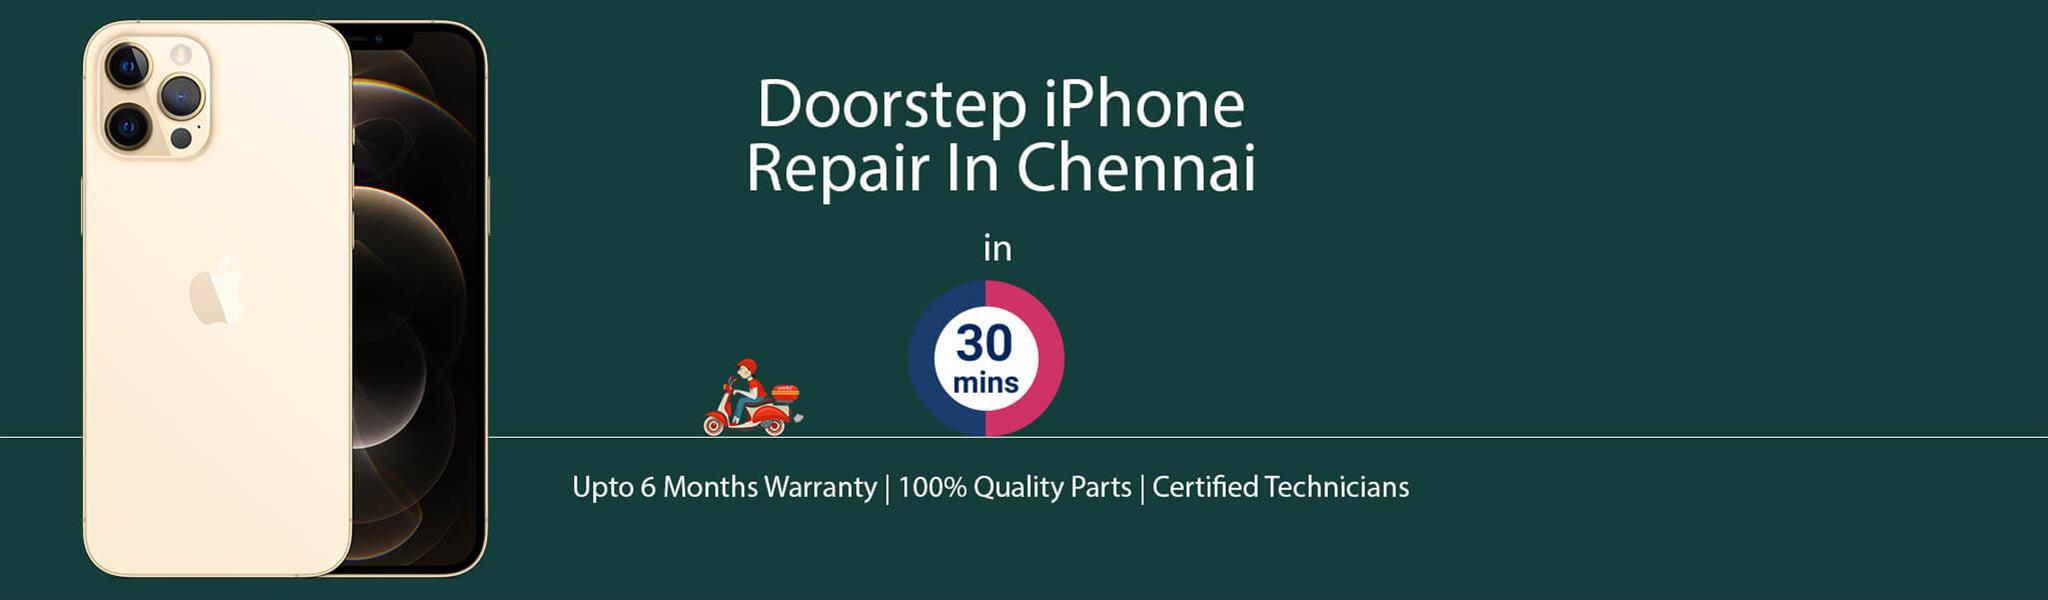 iphone-repair-service-banner-chennai.jpg